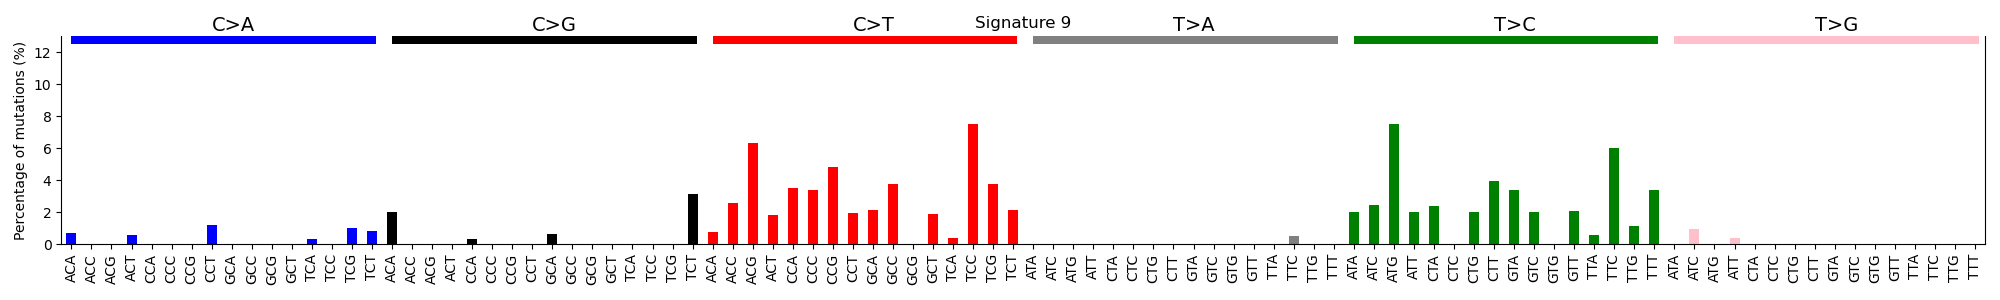 Fig13. Signature 9